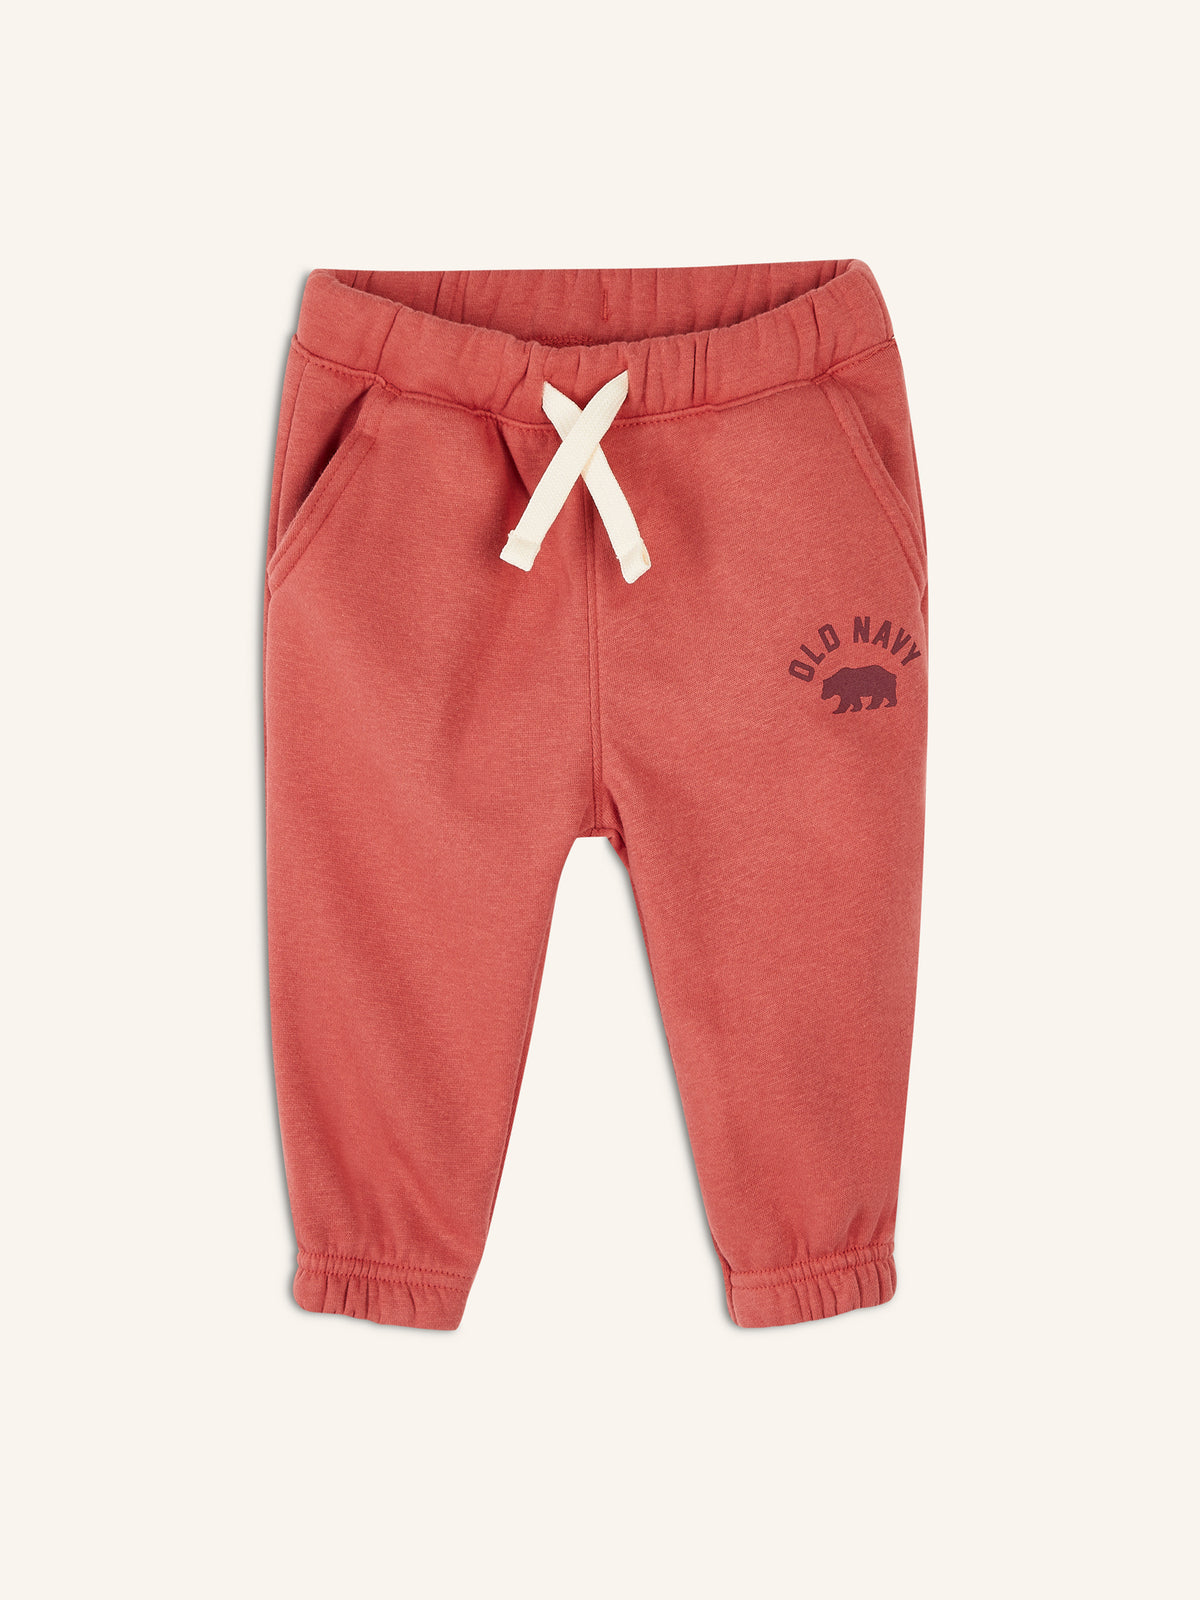 Unisex Functional-Drawstring Logo Sweatpants for Toddler